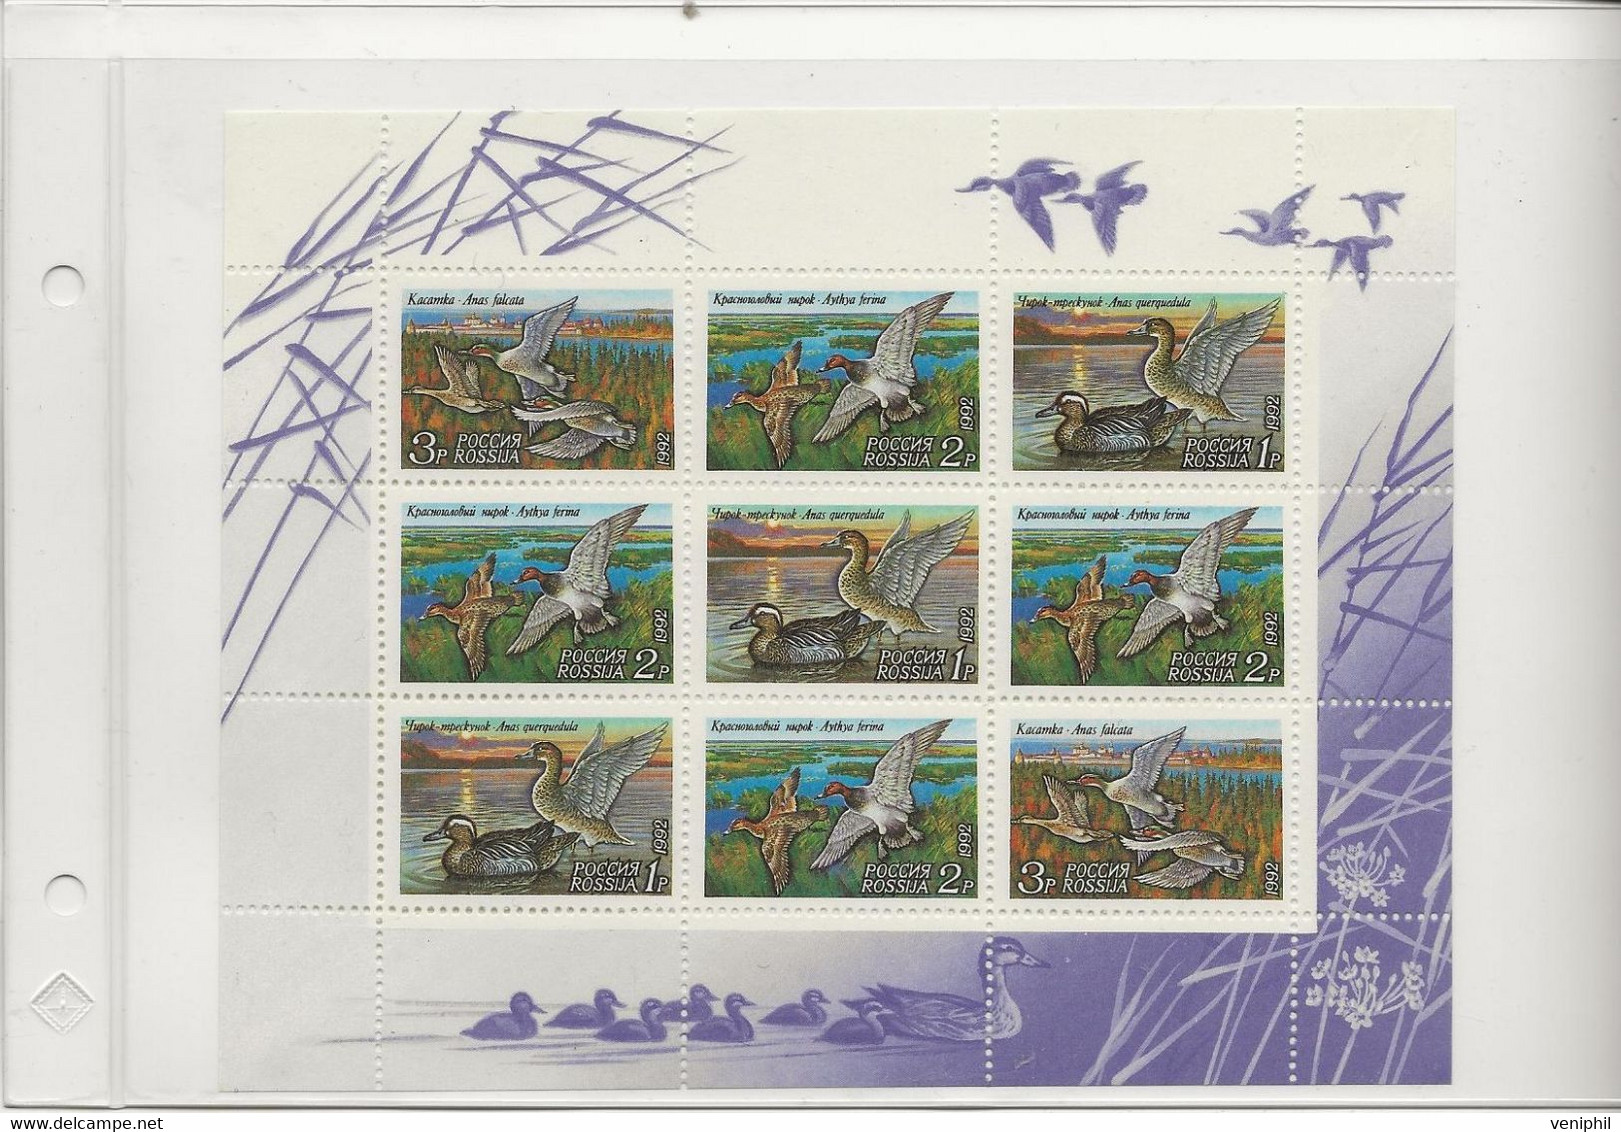 RUSSIE - CANARDS - N° 5958 A 5960 EN FEUILLET -ANNEE 1992 - Blocchi & Fogli